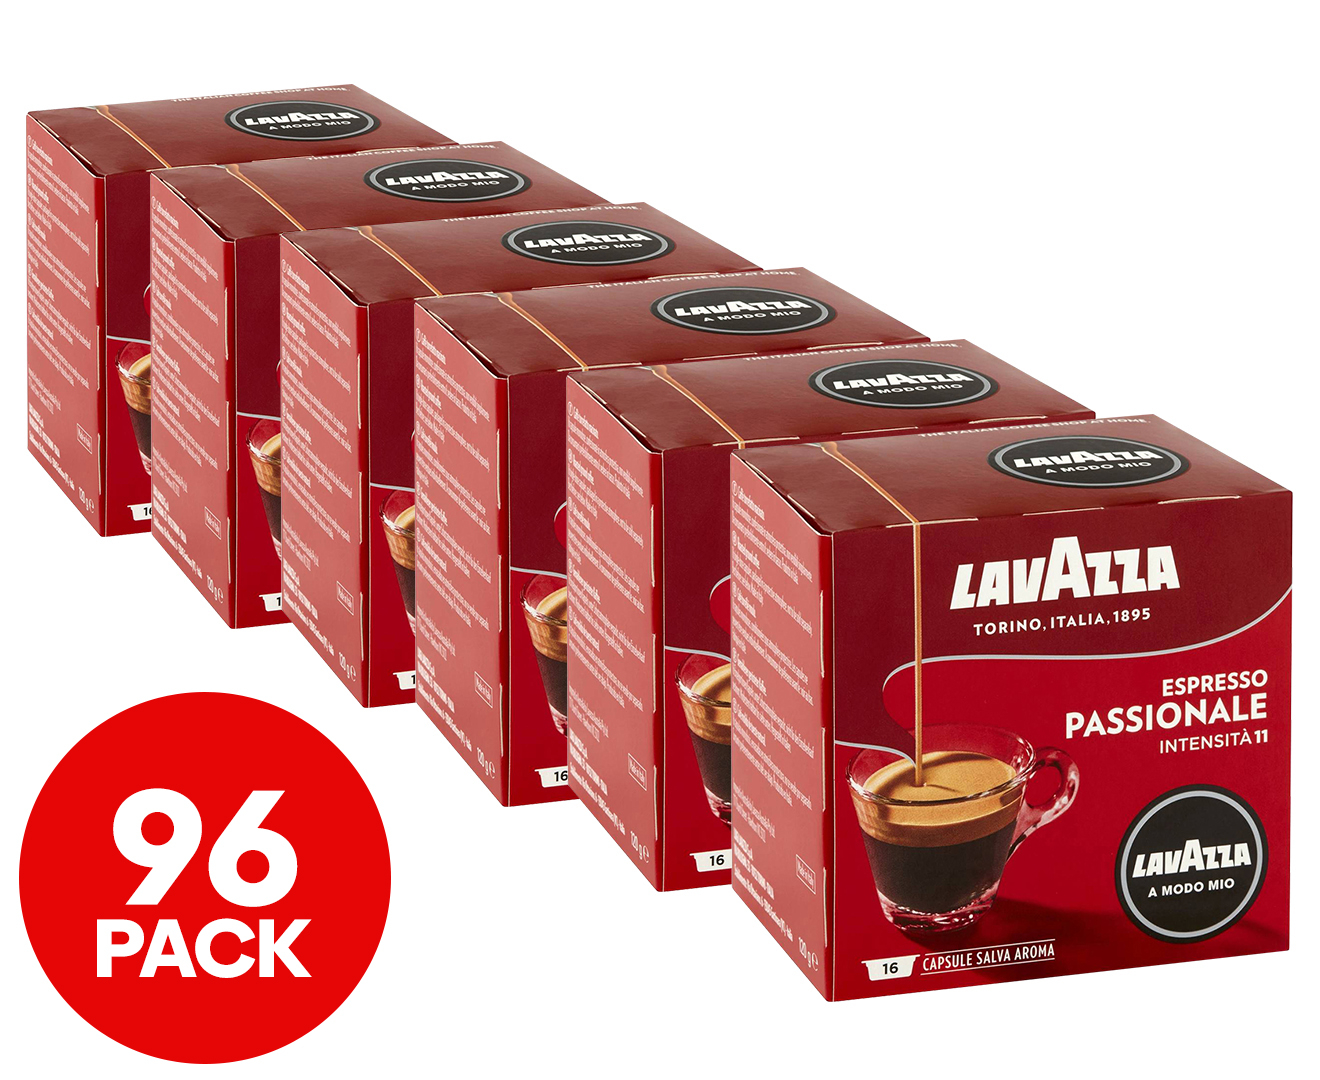 6 x 16pk Lavazza A Modo Mio Coffee Capsules Passionale